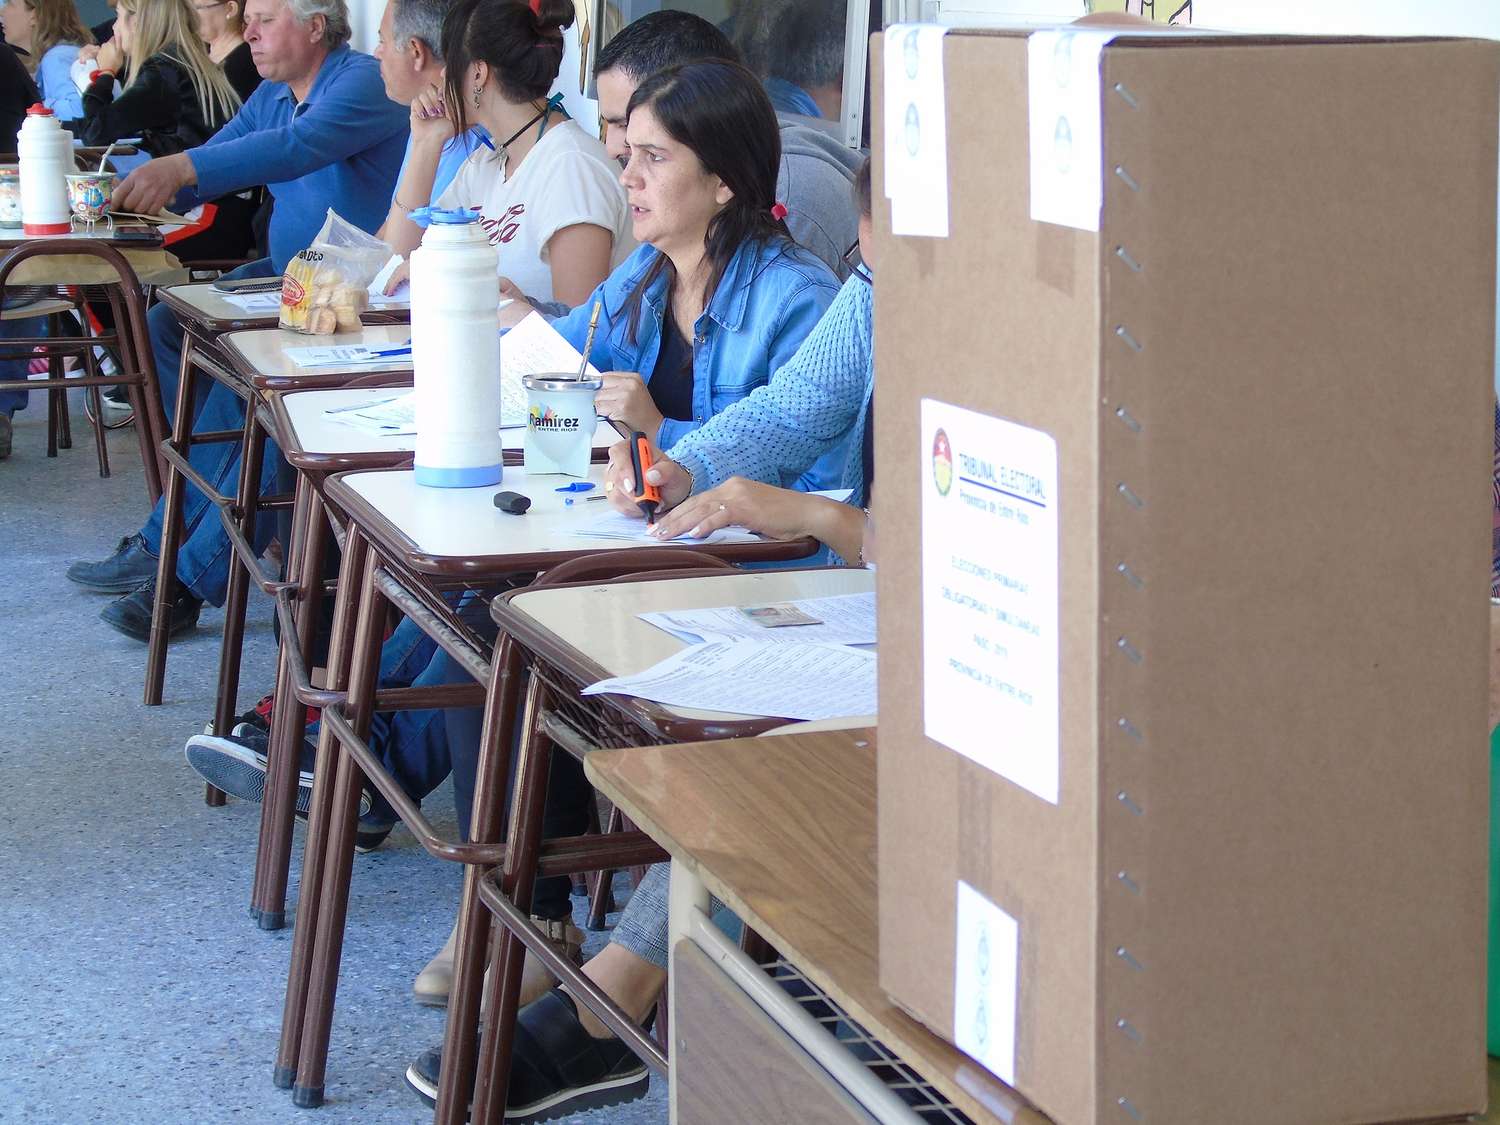 Transcurre con normalidad la jornada electoral en Crespo